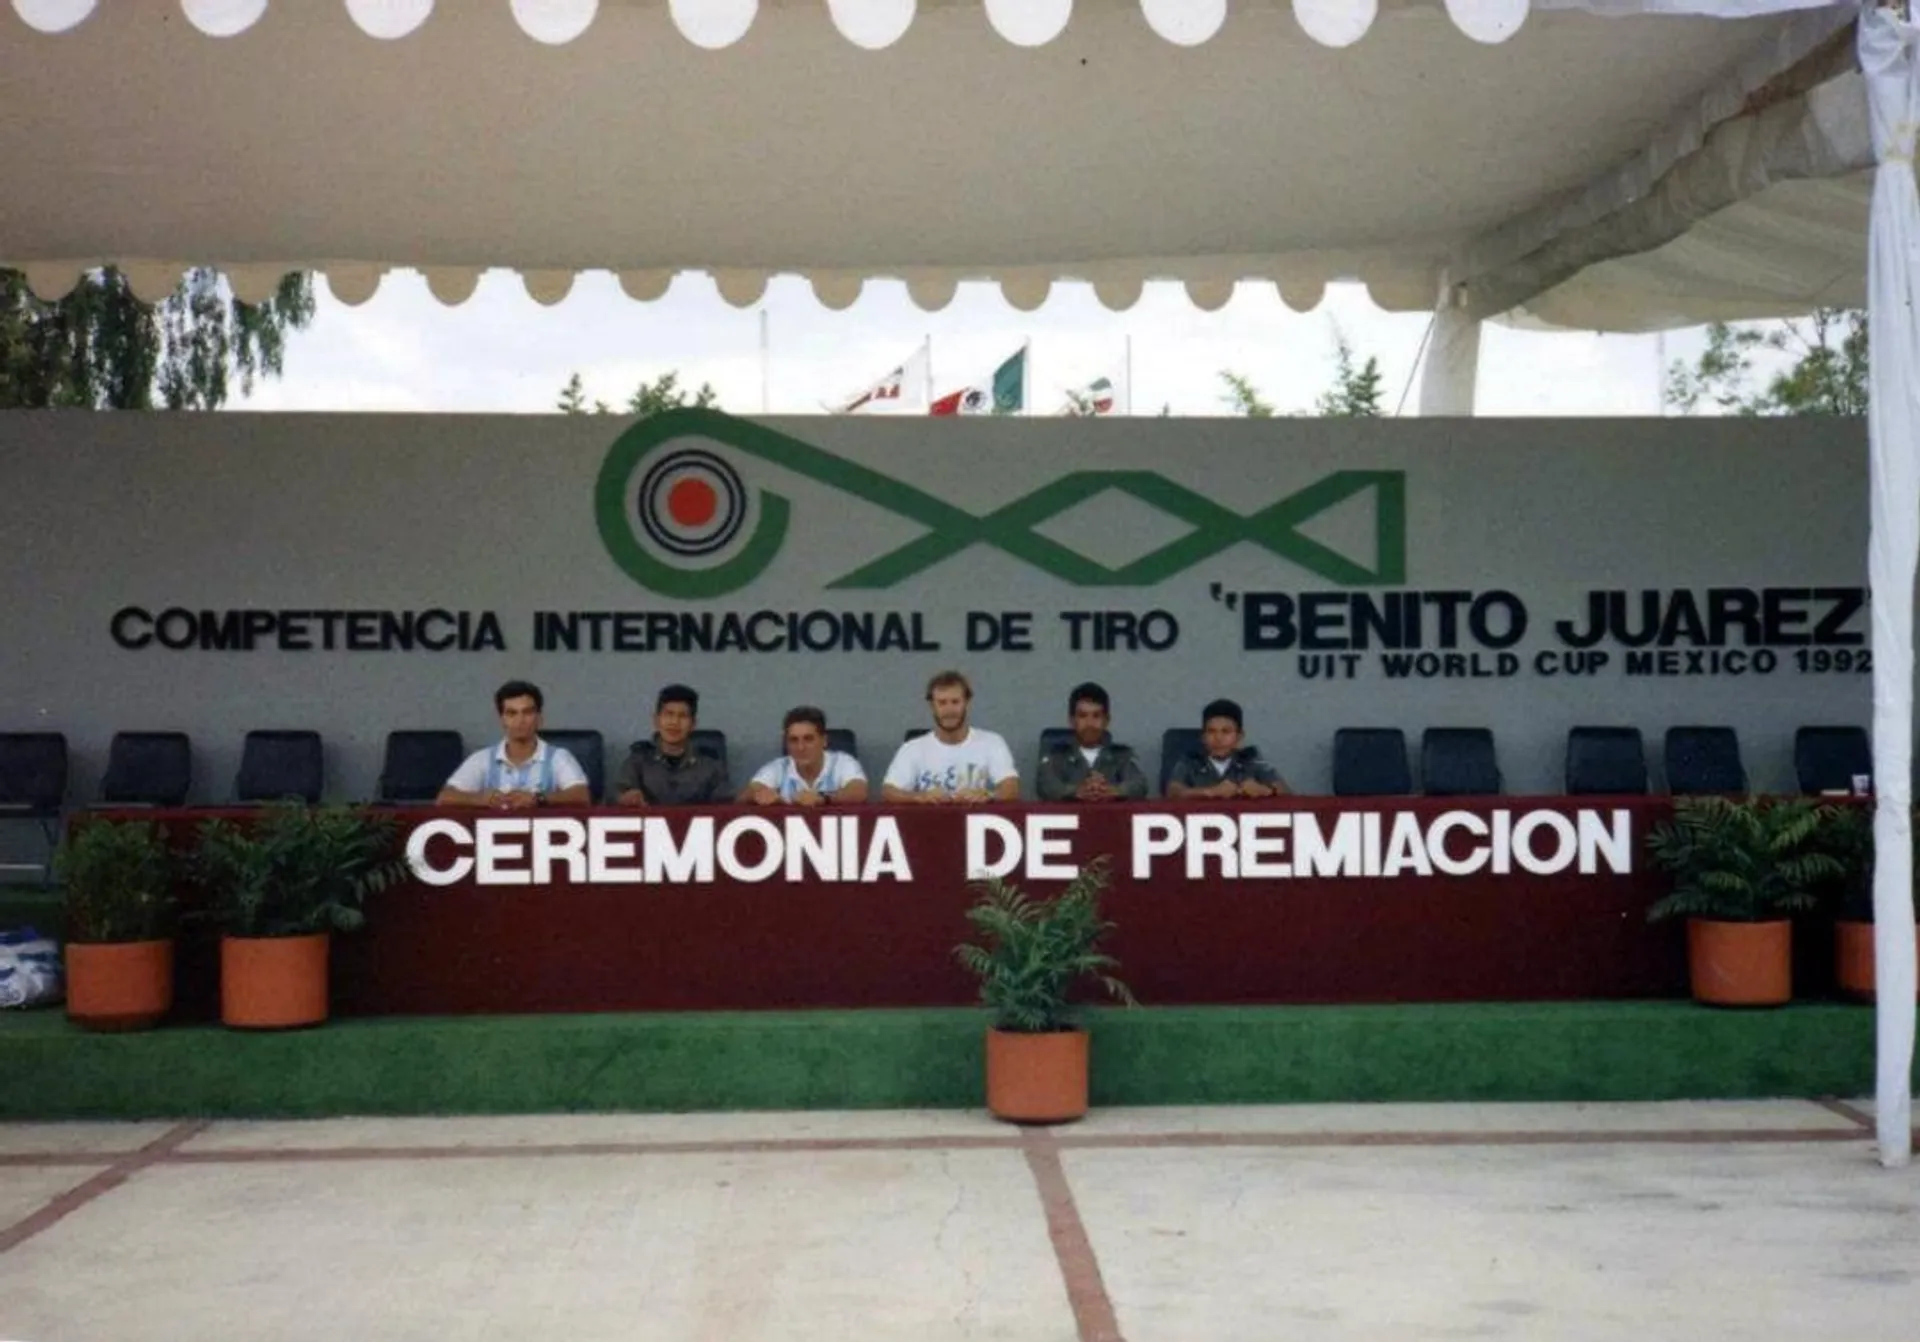 Benito Juarez 1992